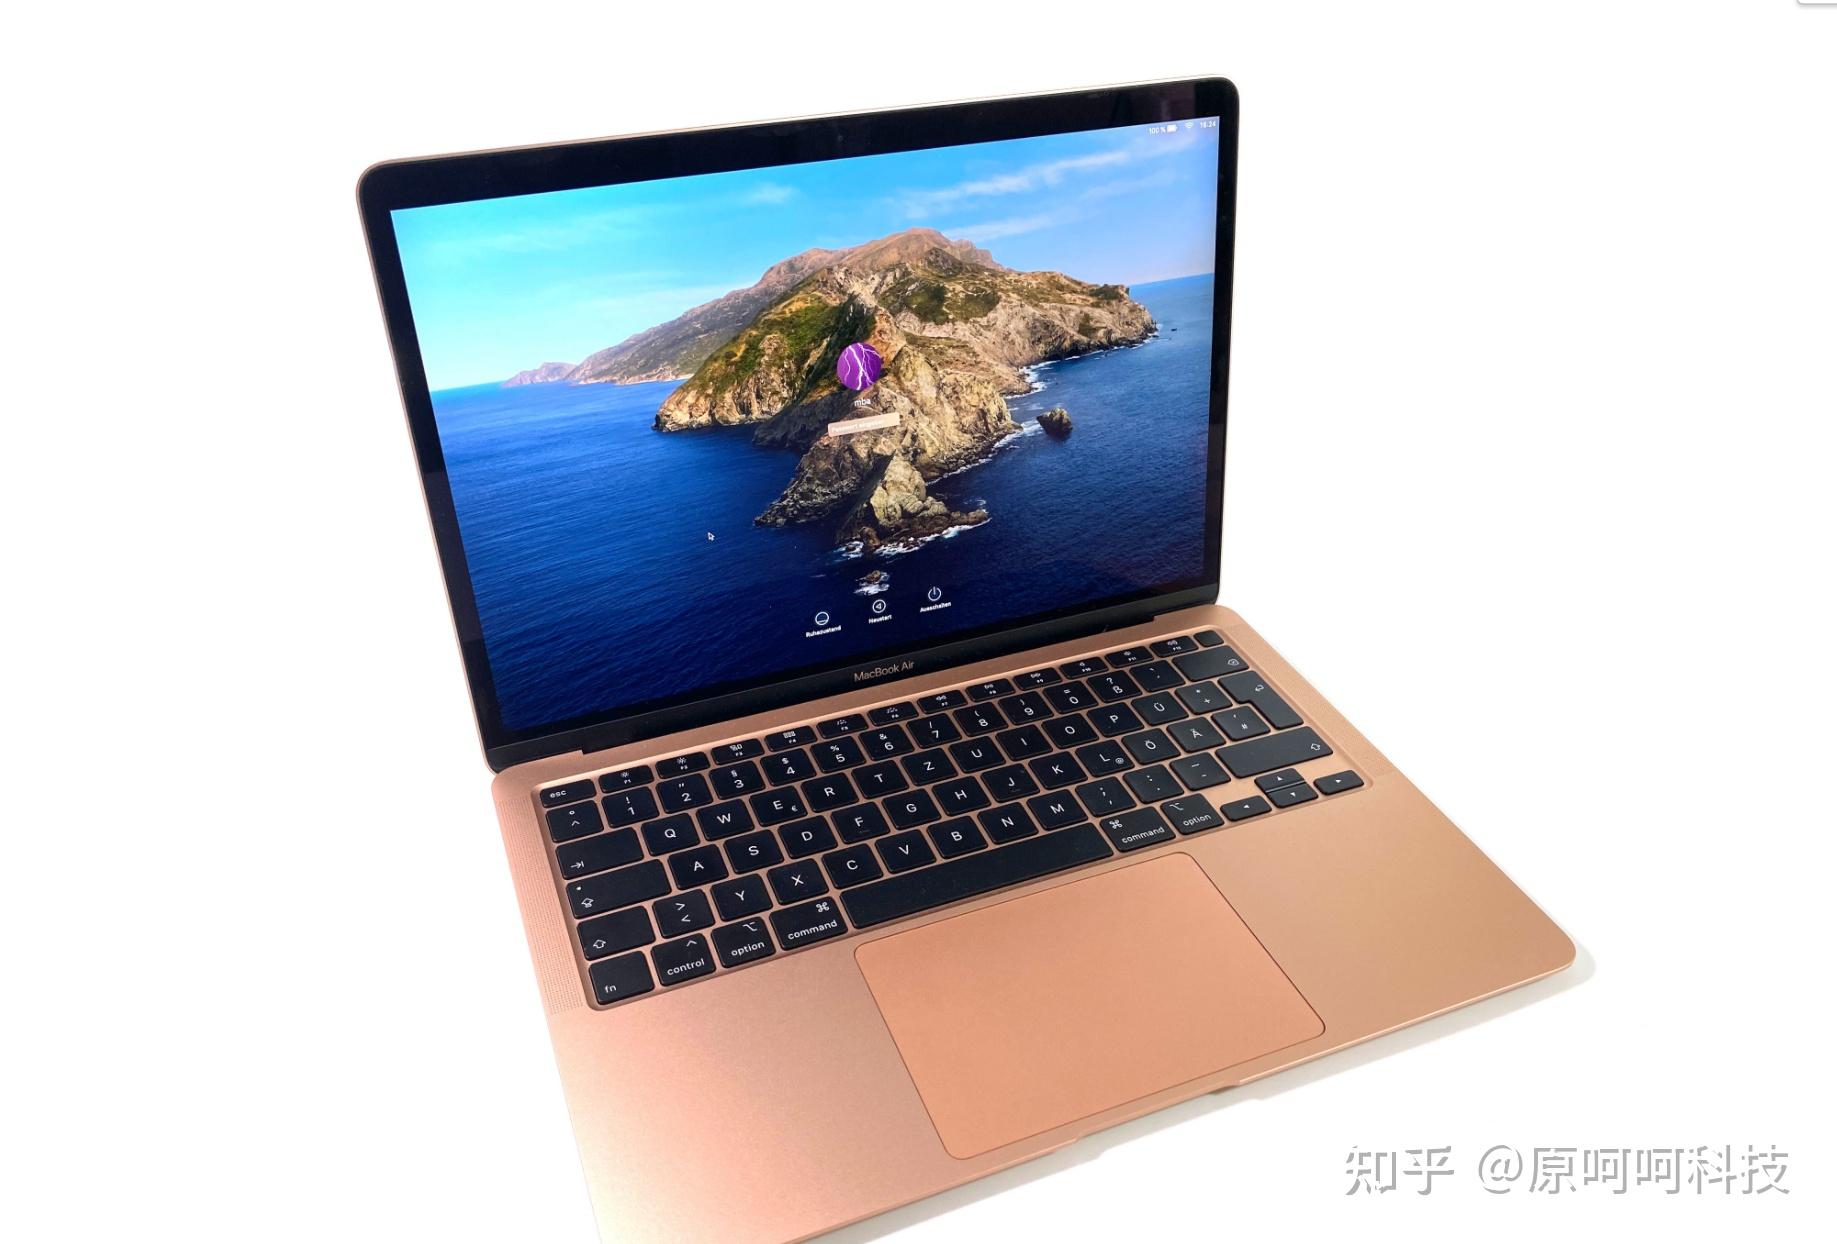 苹果 macbook air,13 英寸(2020 年)